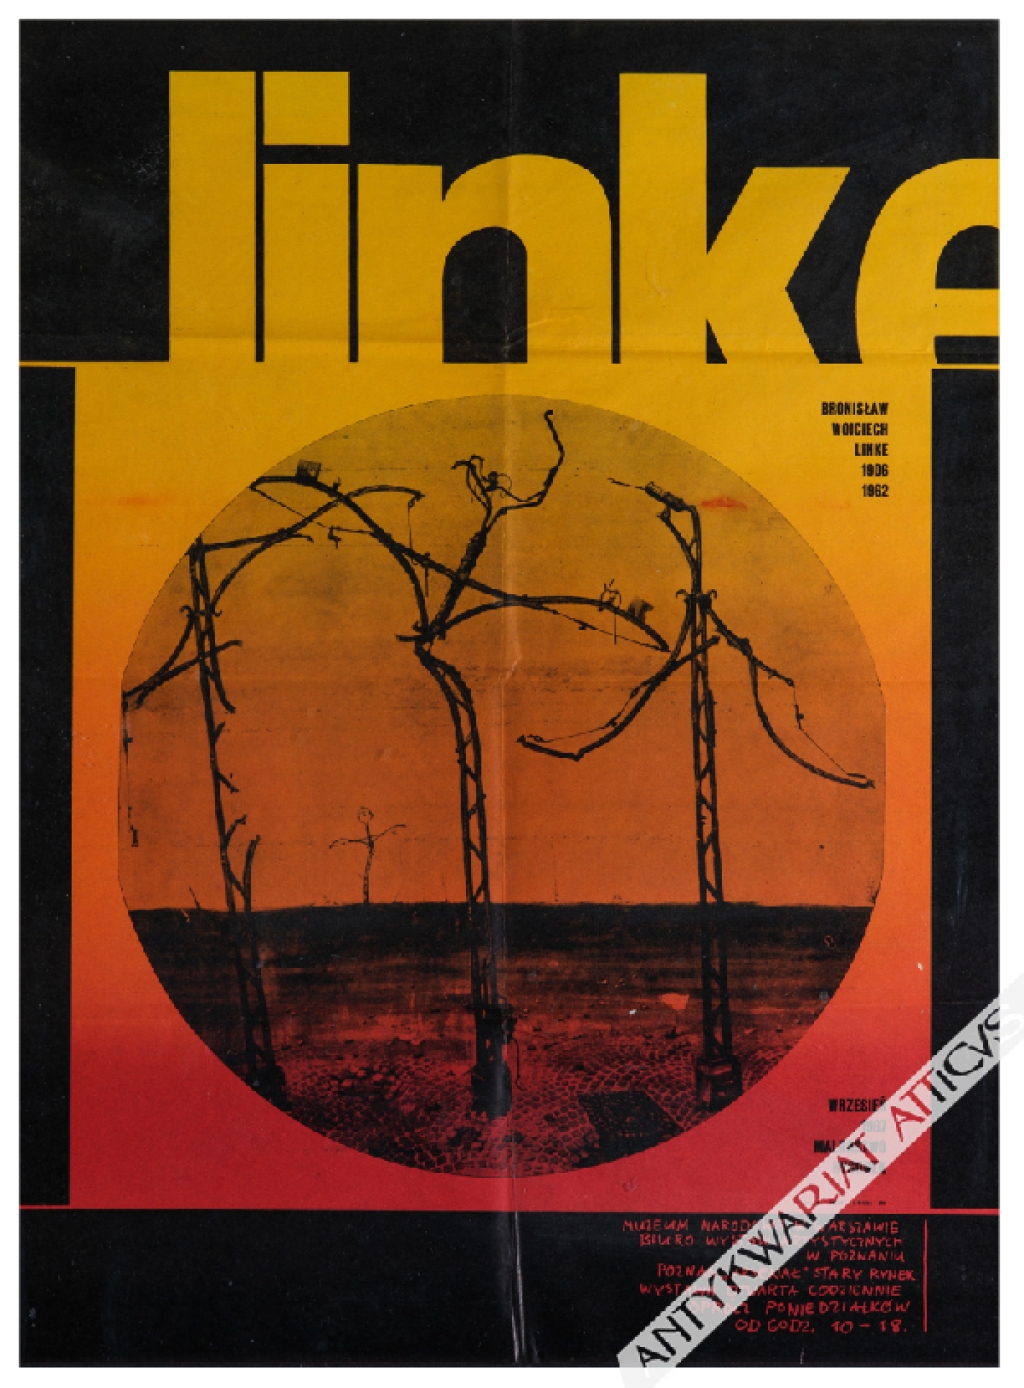 [plakat, 1967] Bronisław Wojciech Linke 1906-1962. Malarstwo, rysunek, wrzesień 1967